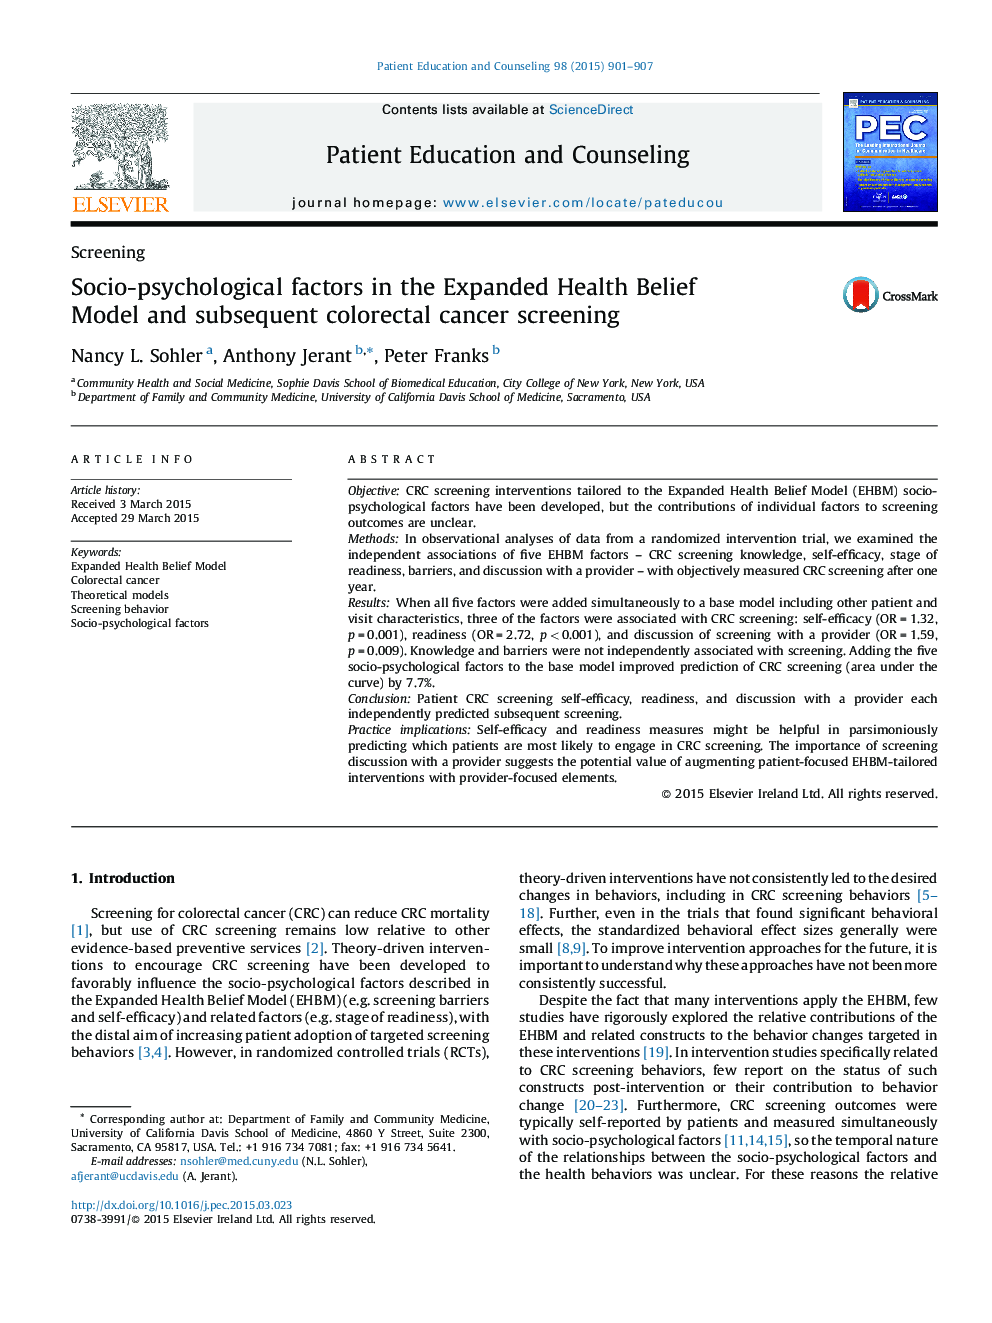 عوامل اجتماعی-روان شناختی در مدل اعتقاد بهداشتی گسترش یافته و غربالگری سرطان کولورکتال 